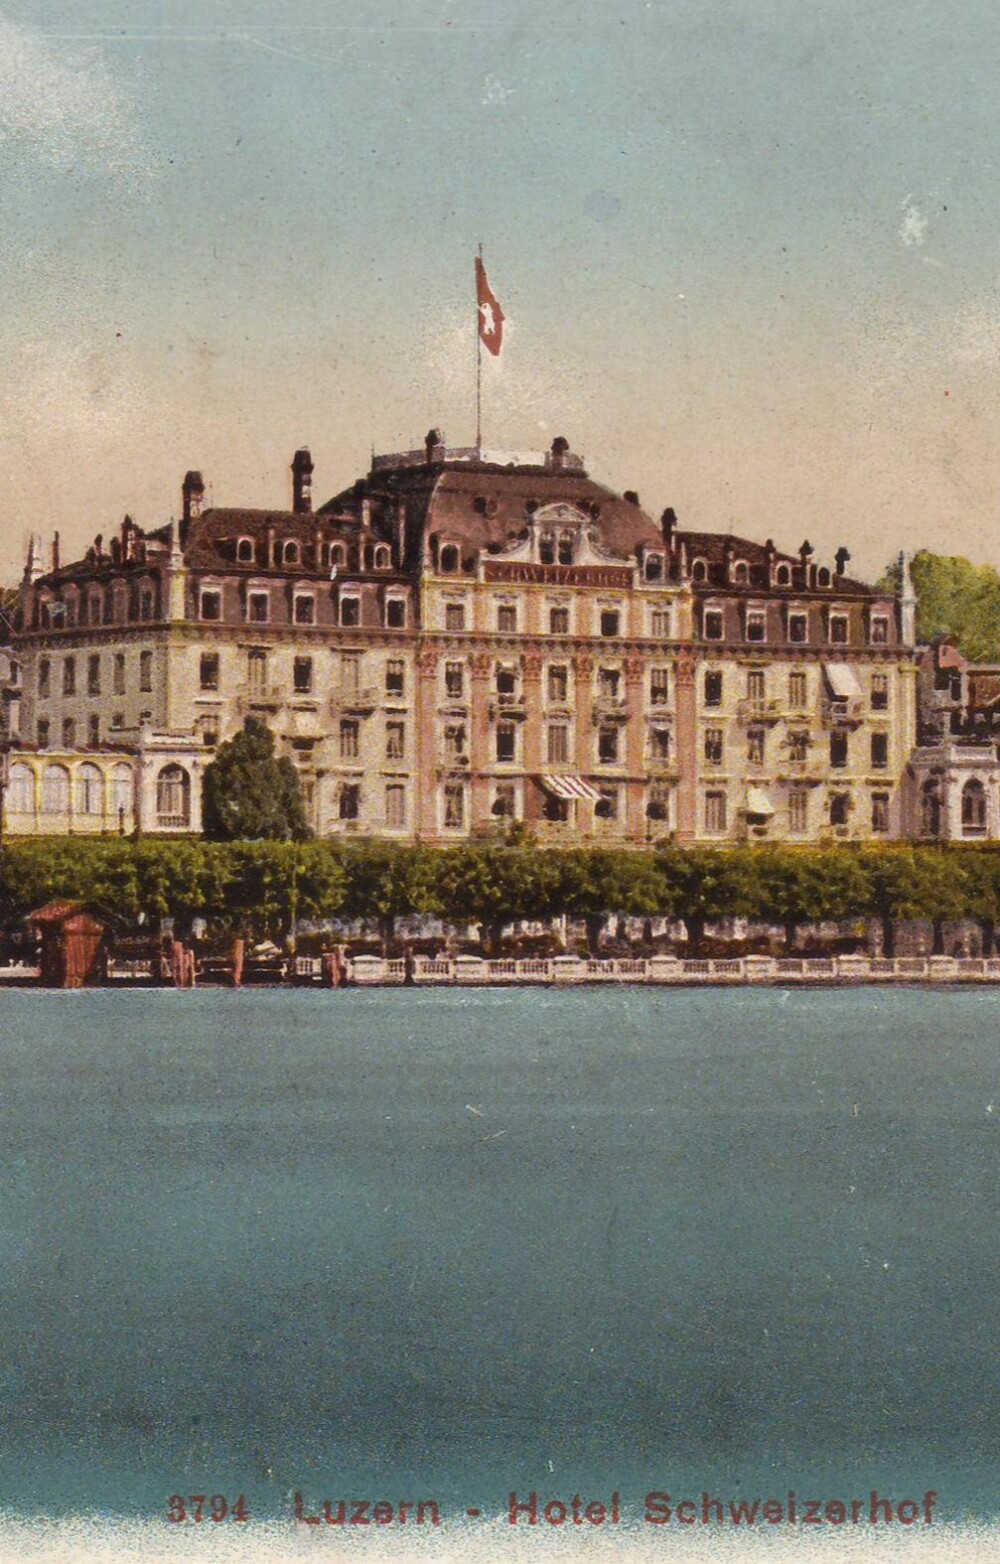 Ein Ort der Gastlichkeit – das Hotel Schweizerhof Luzern